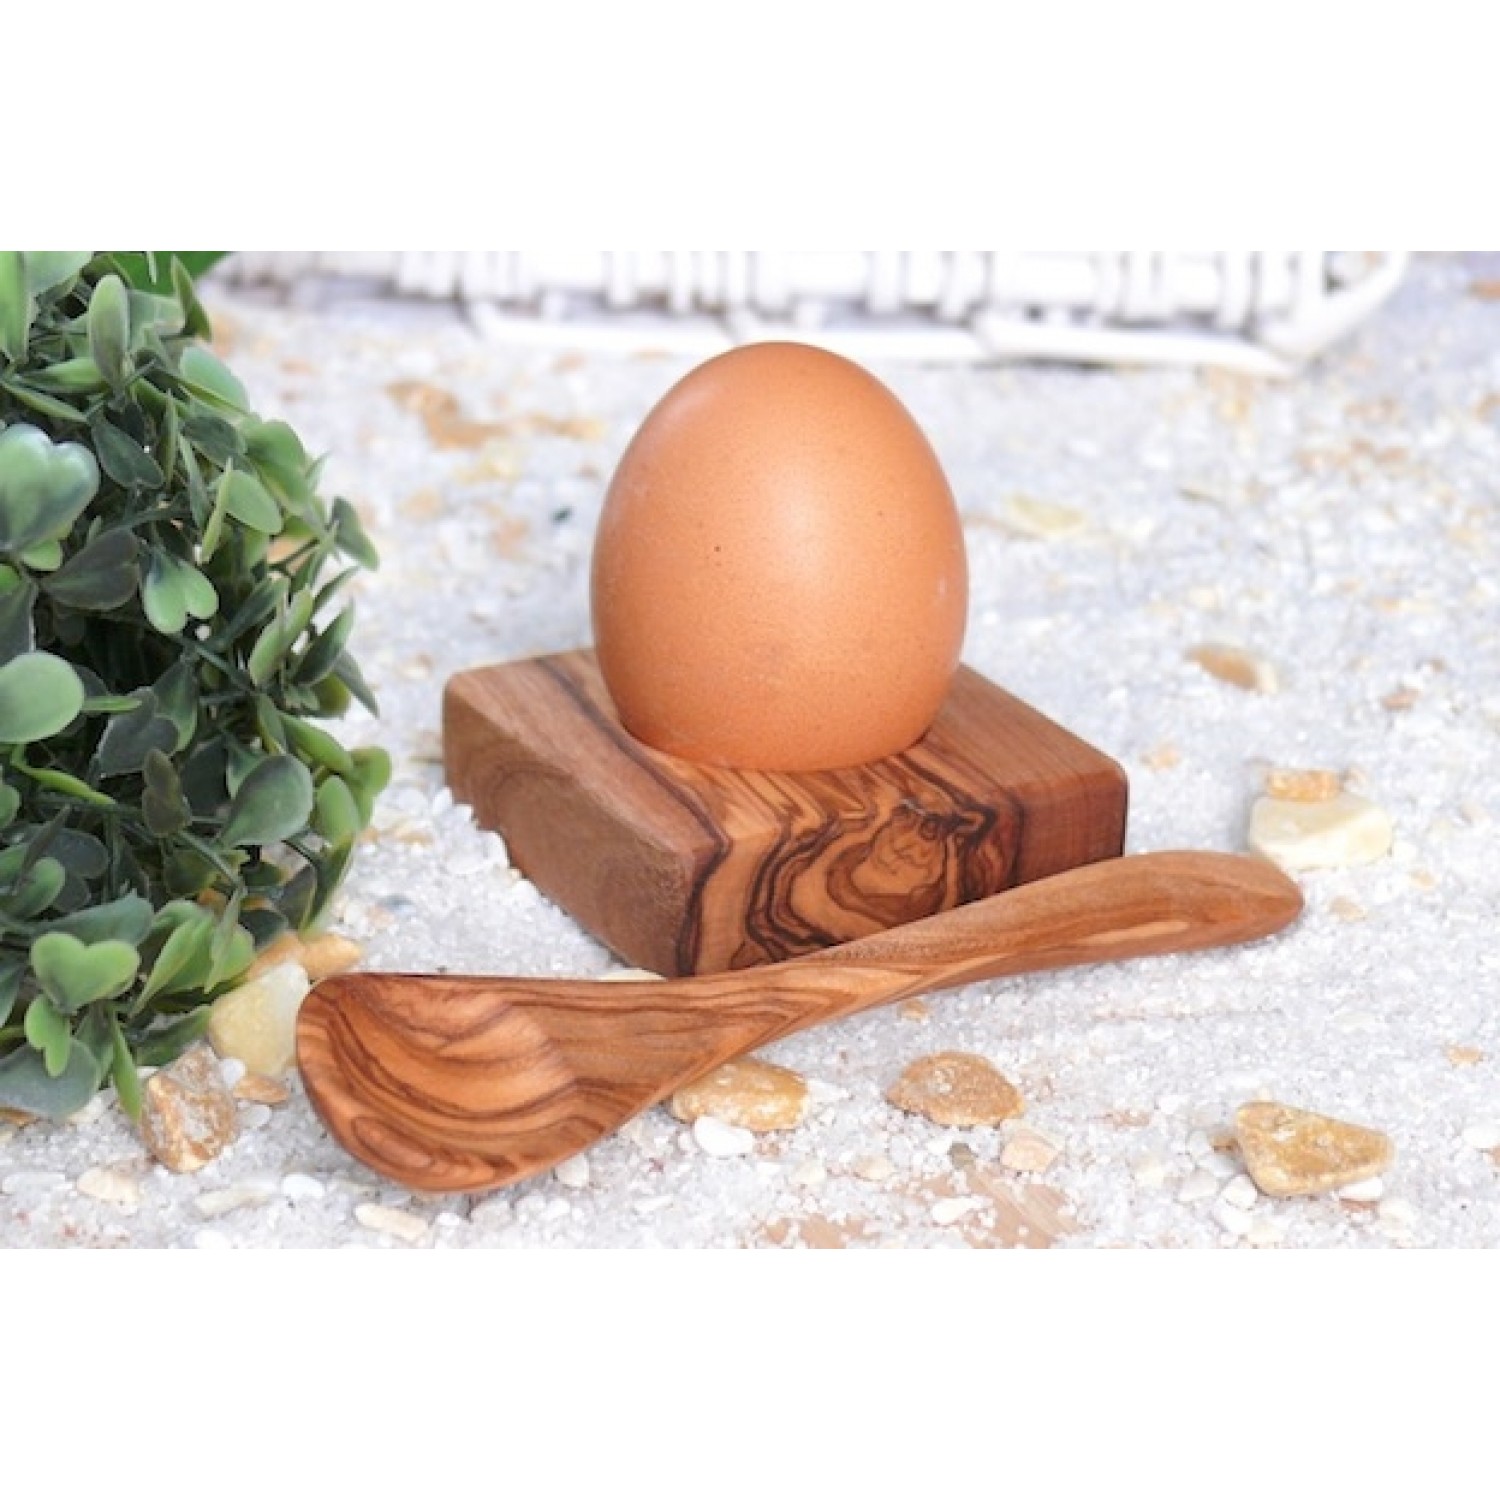 Egg Holder "Troué" & Spoon made of Olive Wood | Olivenholz erleben